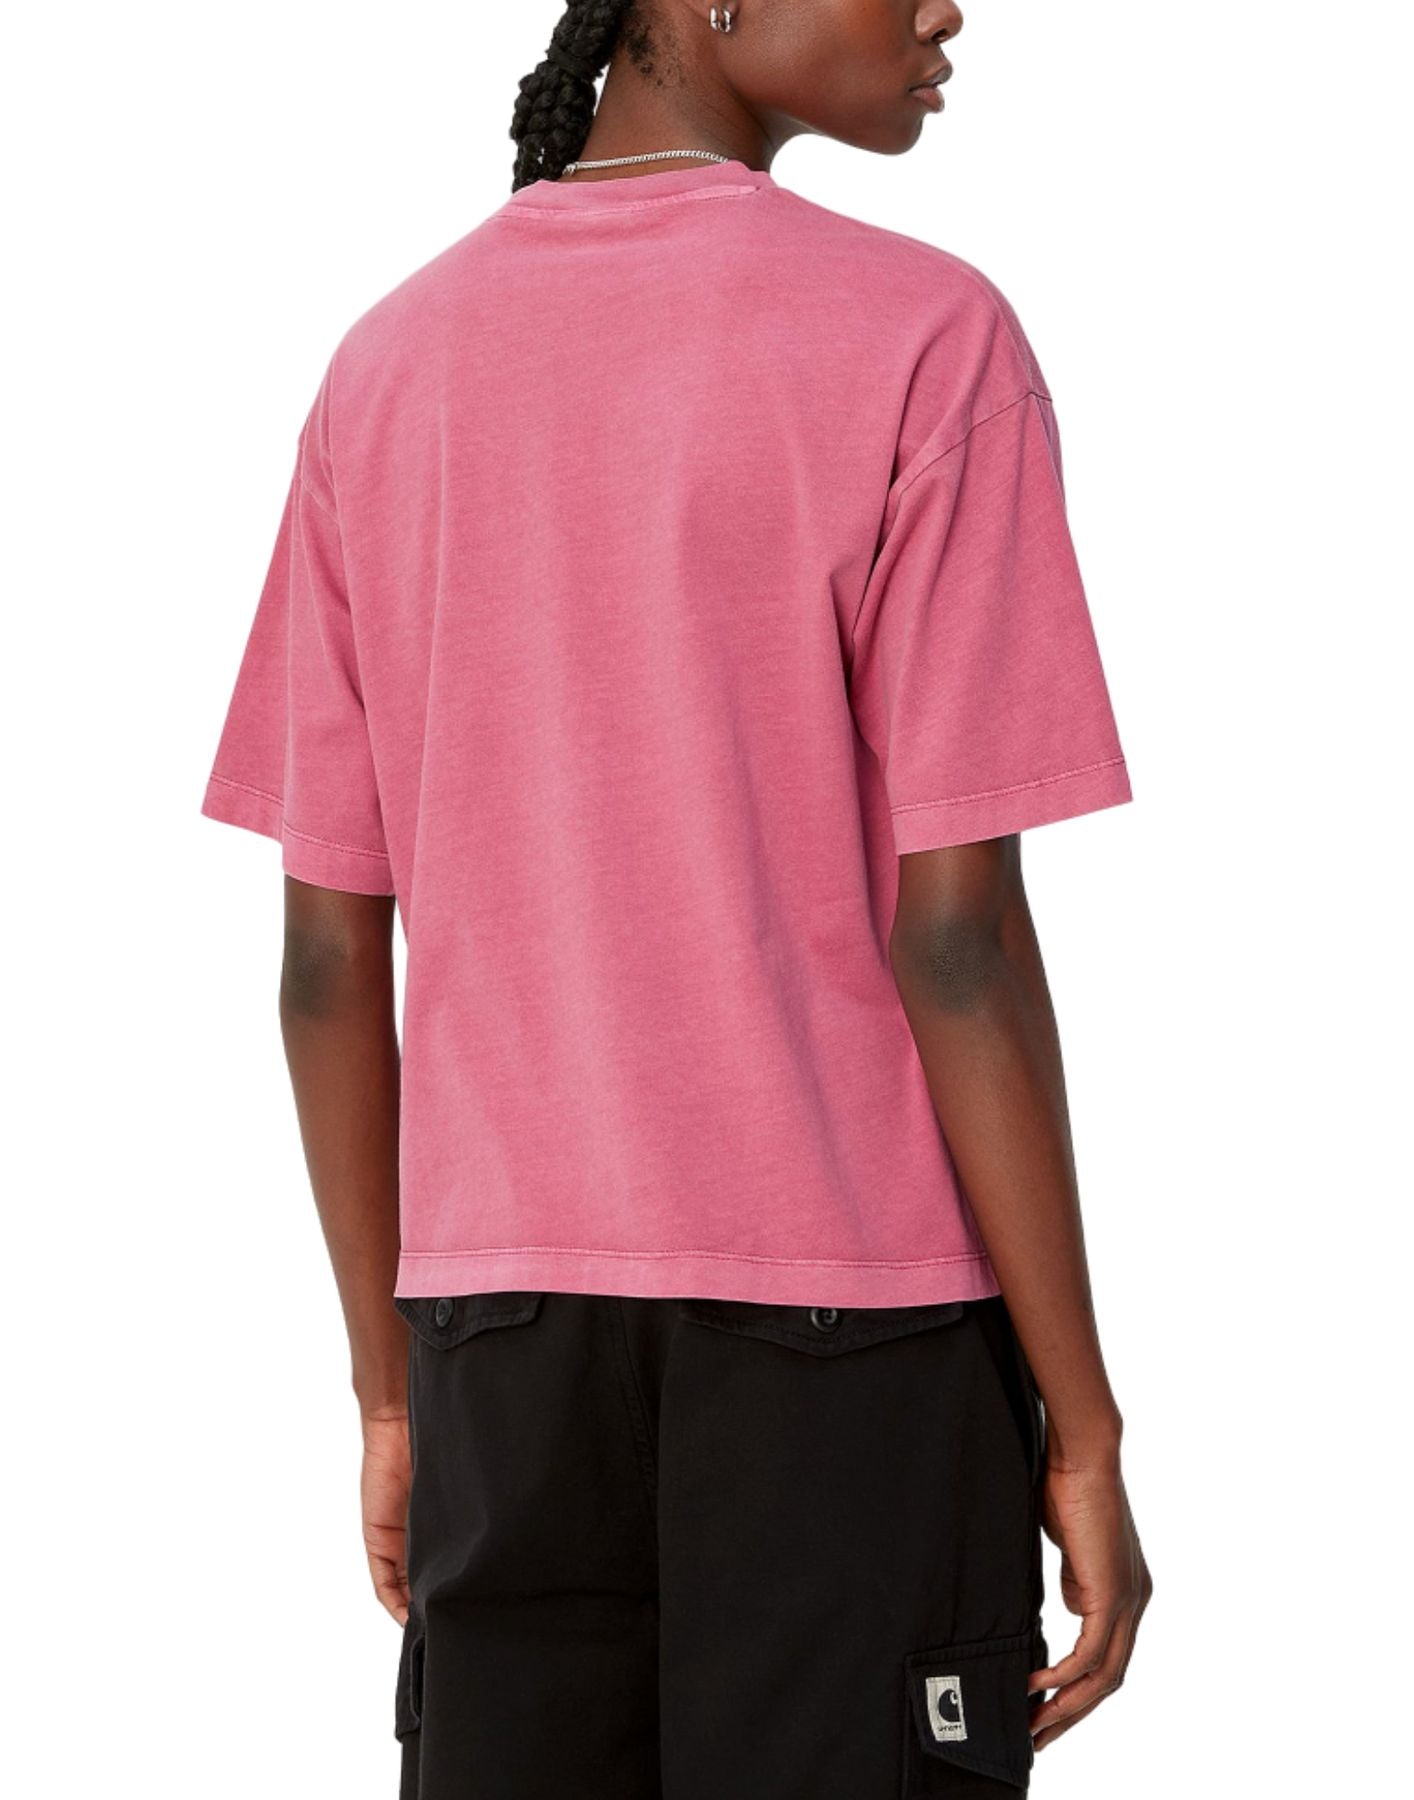 T-shirt woman I033051 1YT.GD pink CARHARTT WIP